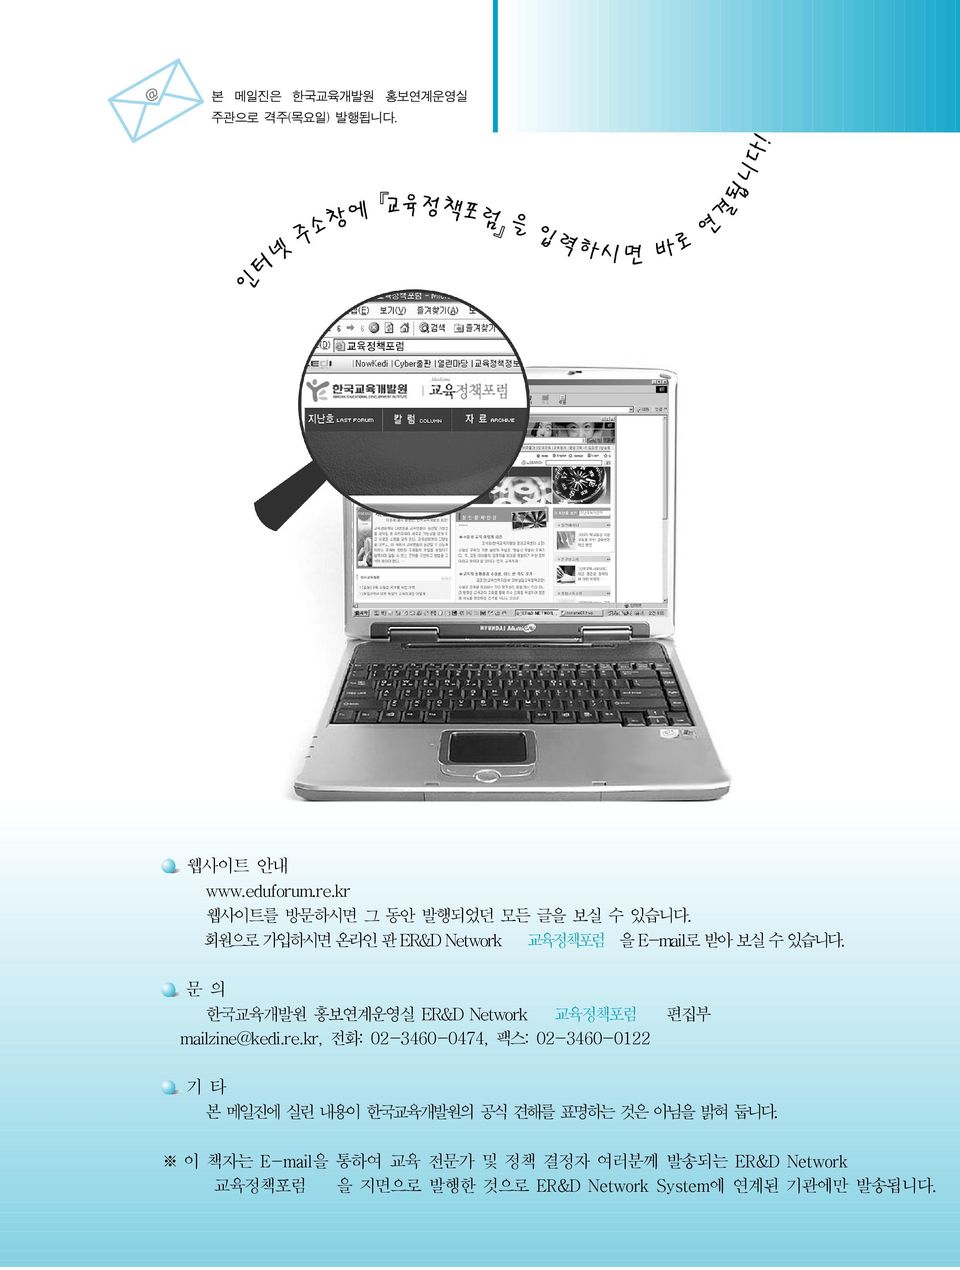 문의 한국교육개발원 홍보연계운영실 ER&D Network 교육정책포럼 편집부 mailzine@kedi.re.